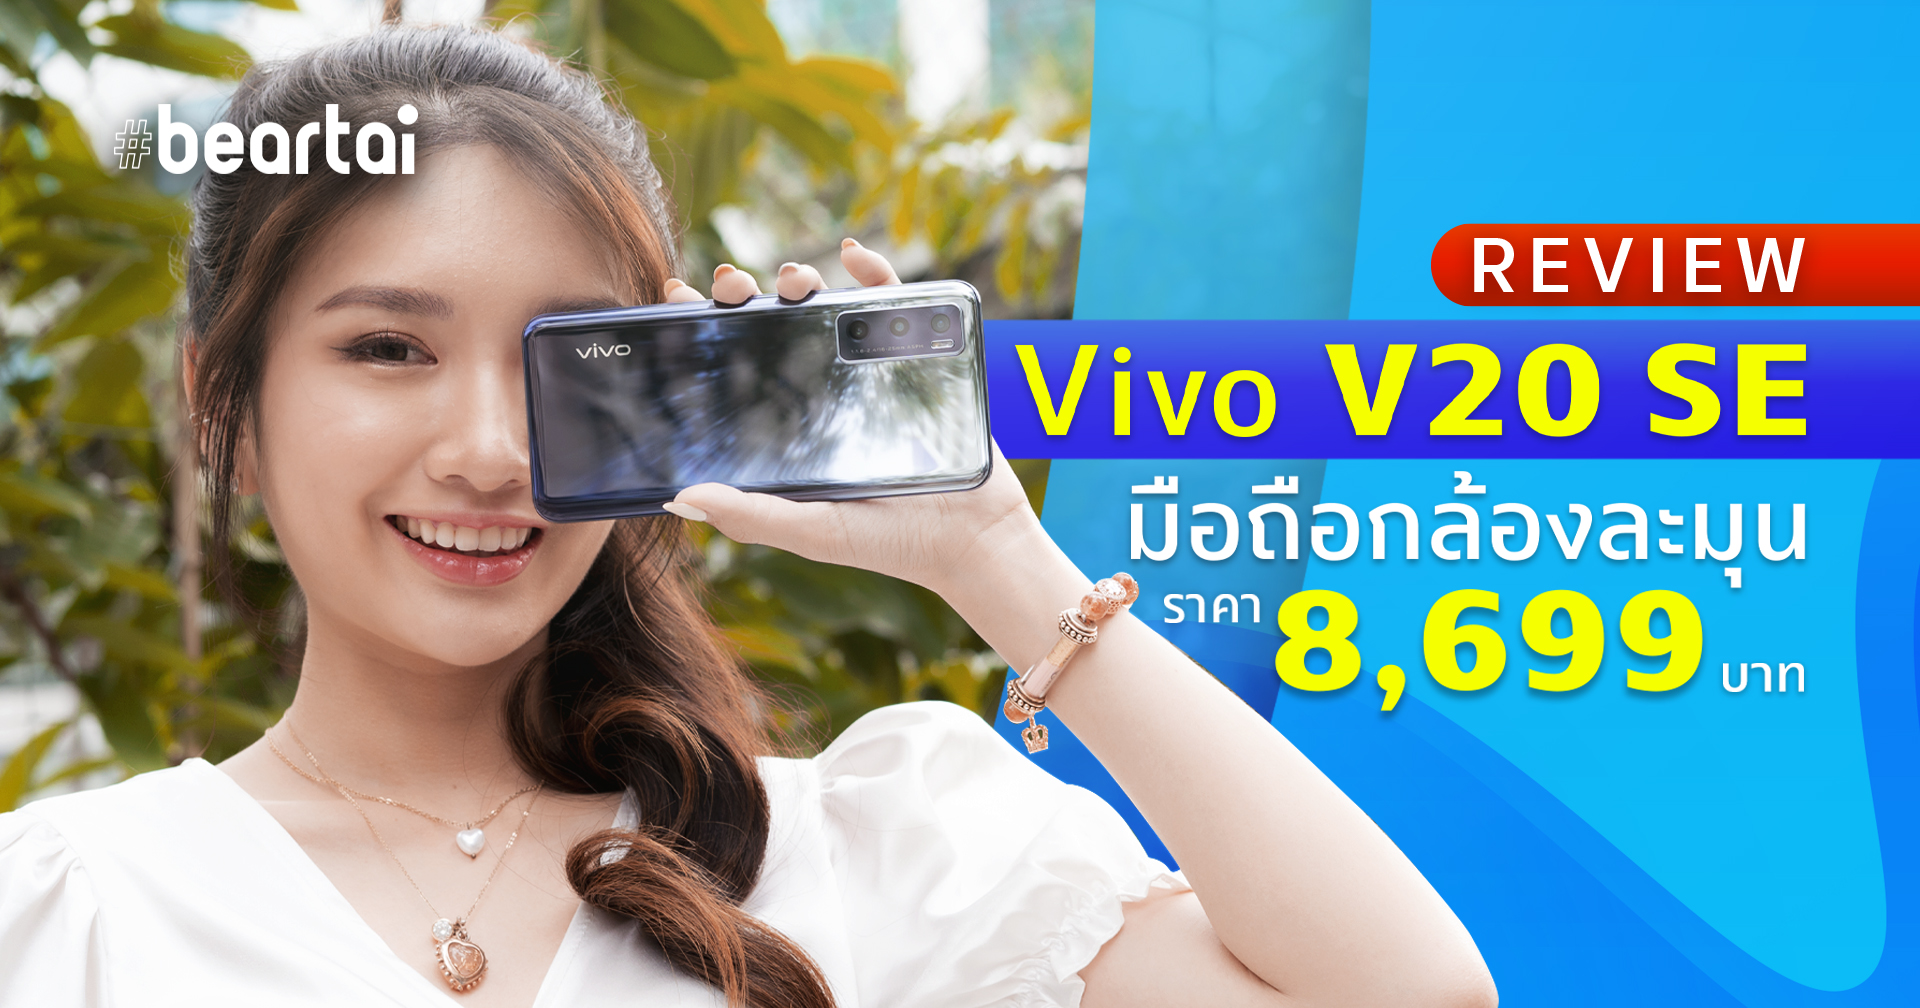 รีวิว Vivo V20 SE มือถือกล้องละมุน ที่สาว ๆ หลายคนไฝ่หา ในราคาน่าคบ 8,699 บาท